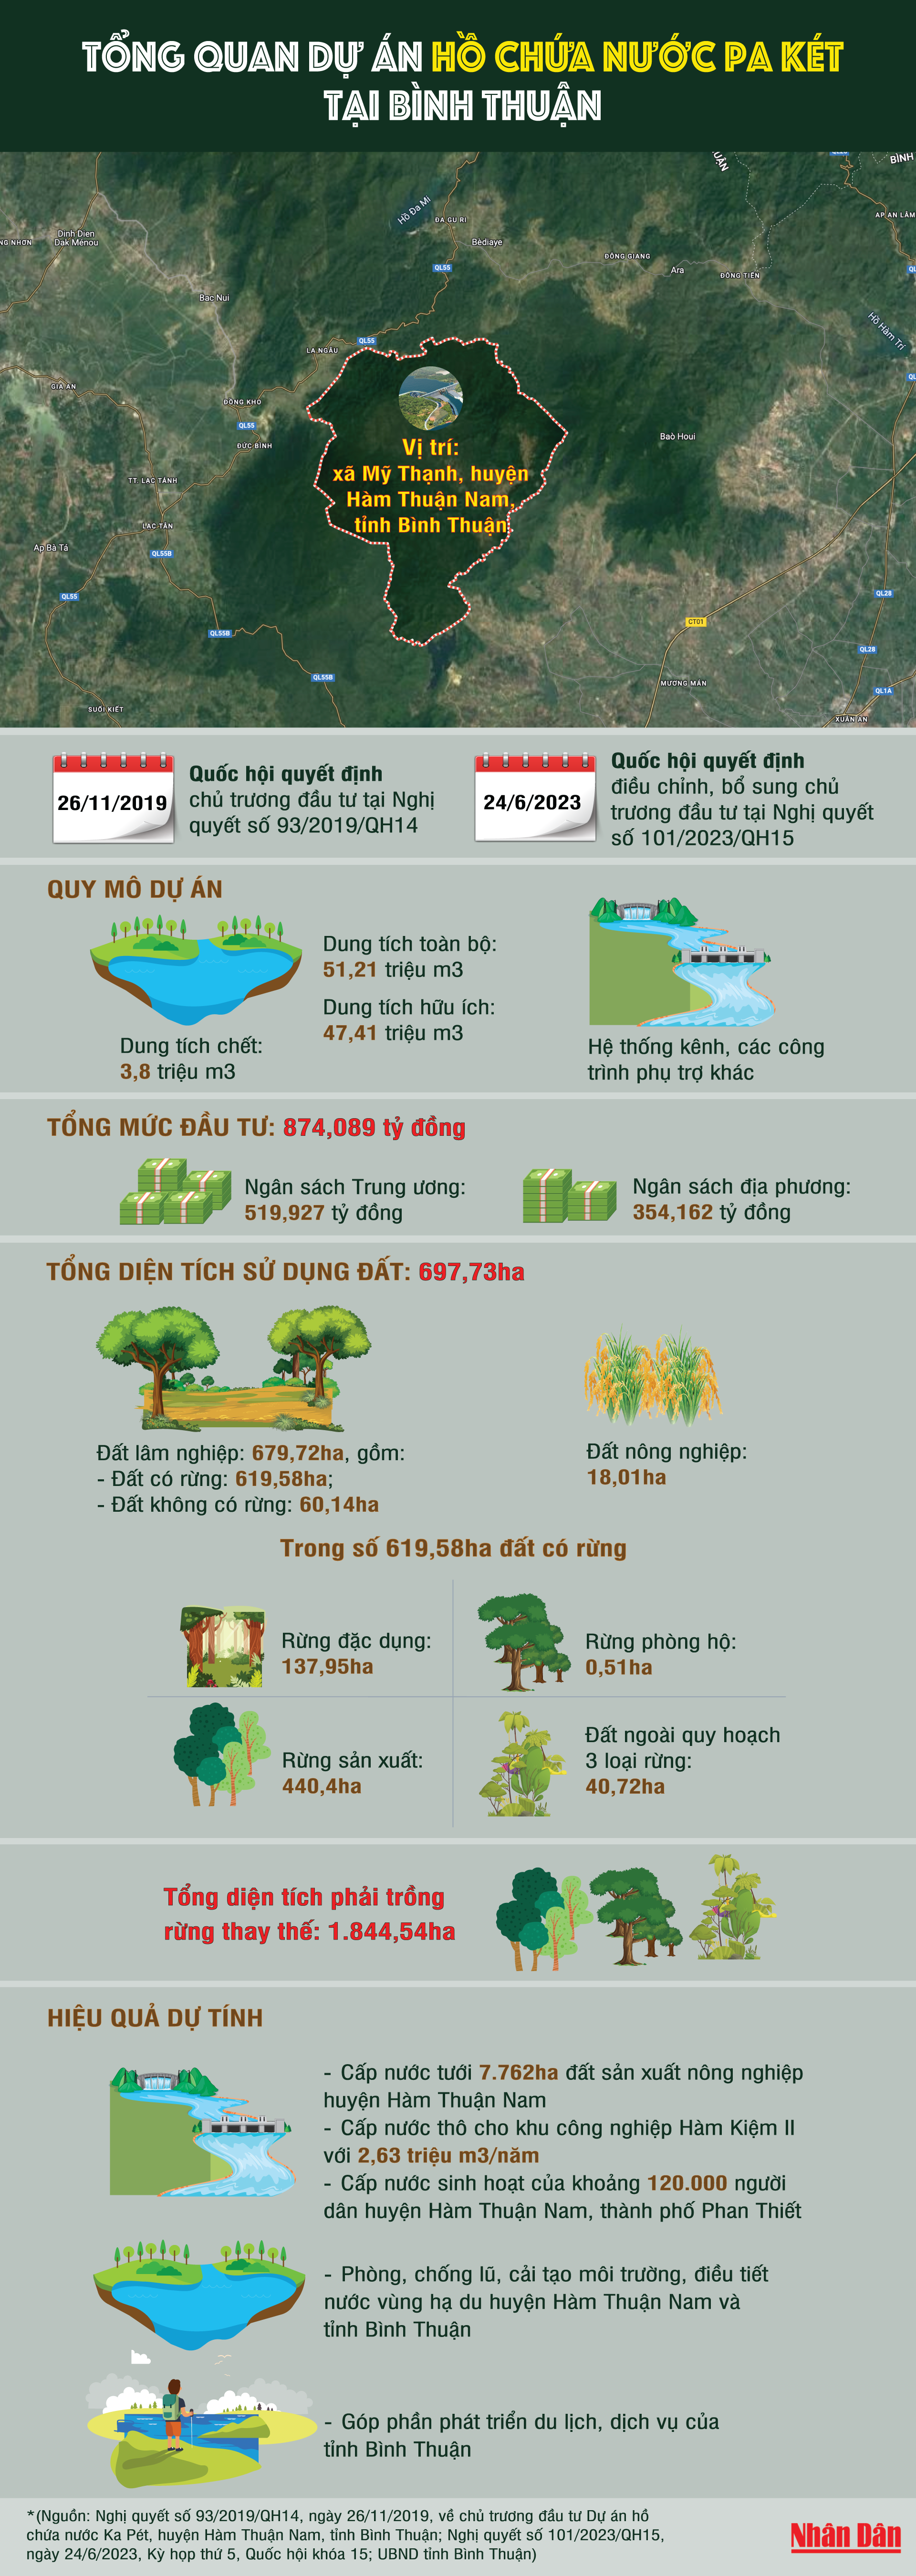 [Infographic] Tổng quan dự án Hồ chứa nước Ka Pét tại Bình Thuận ảnh 1